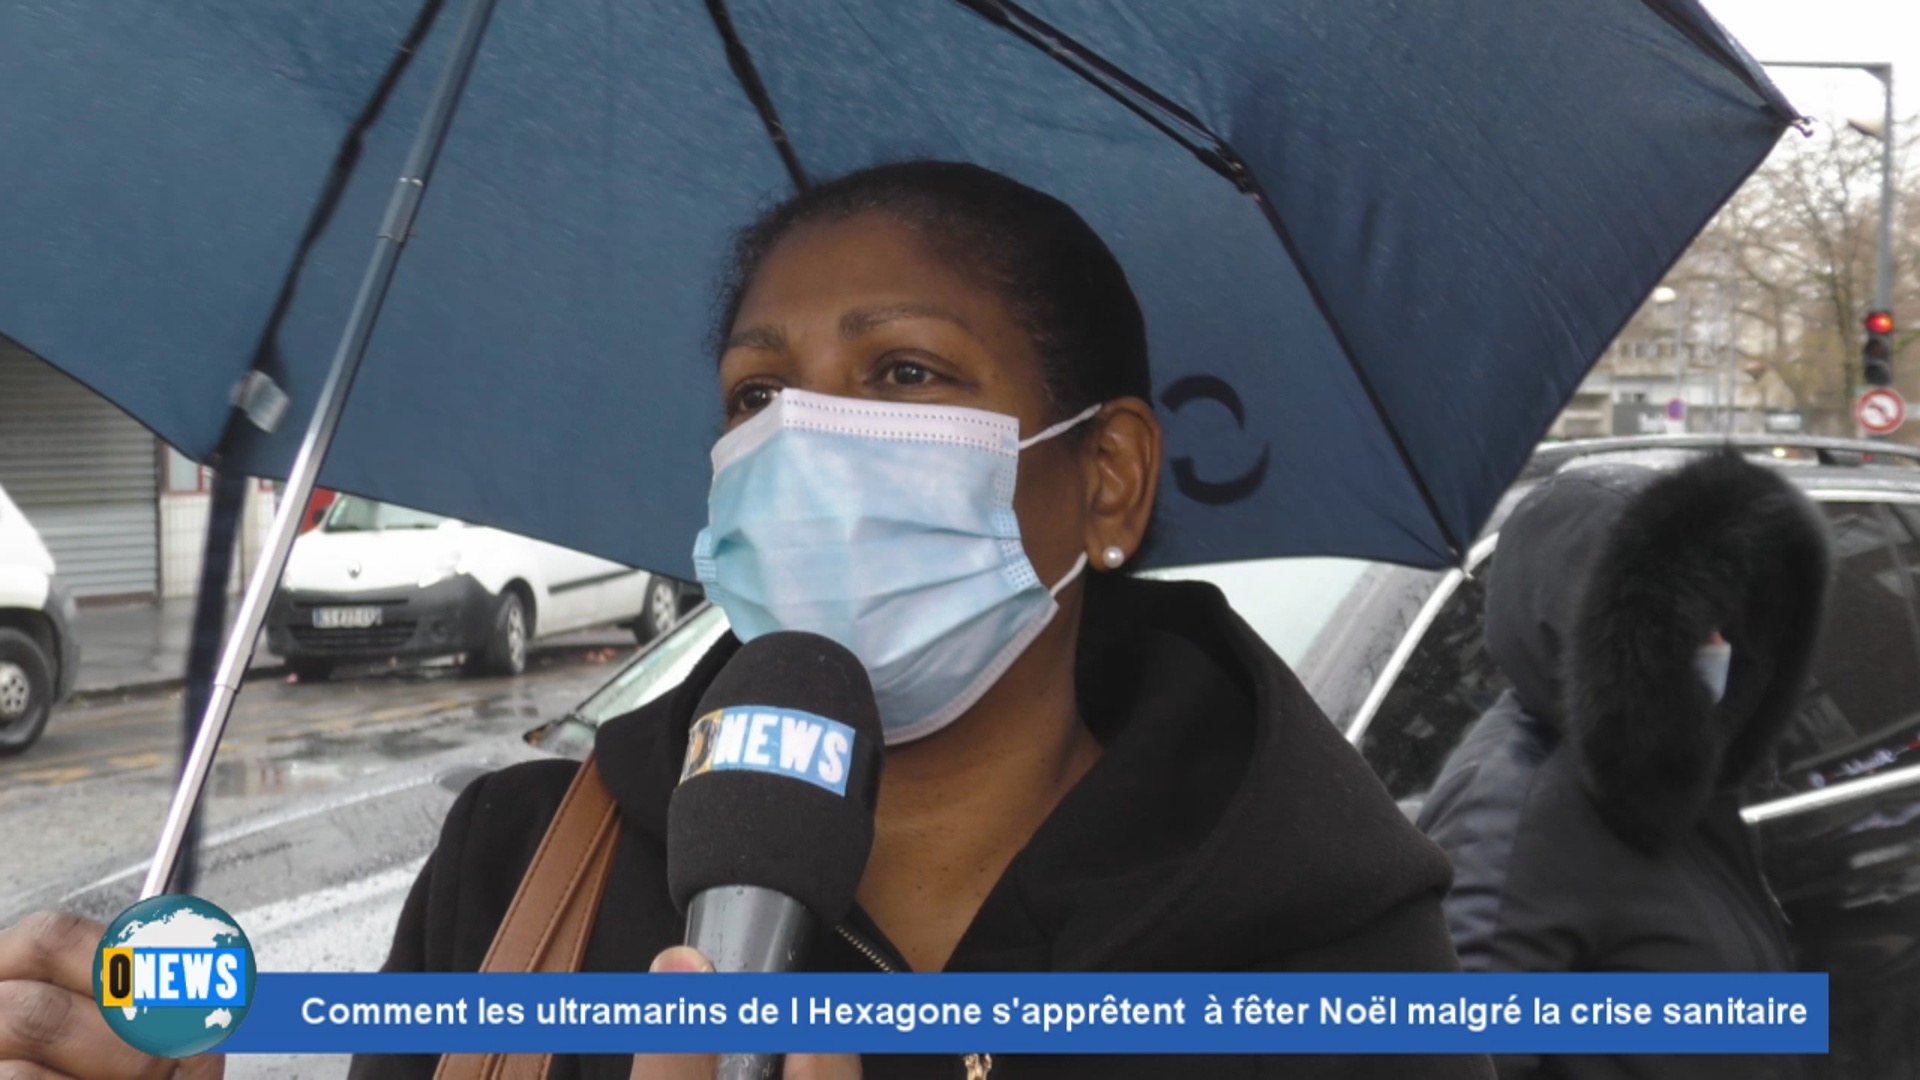 [Vidéo] Onews  Hexagone. Comment les ultramarins s apprêtent à fêter Noël. Reportage de Onews Paris